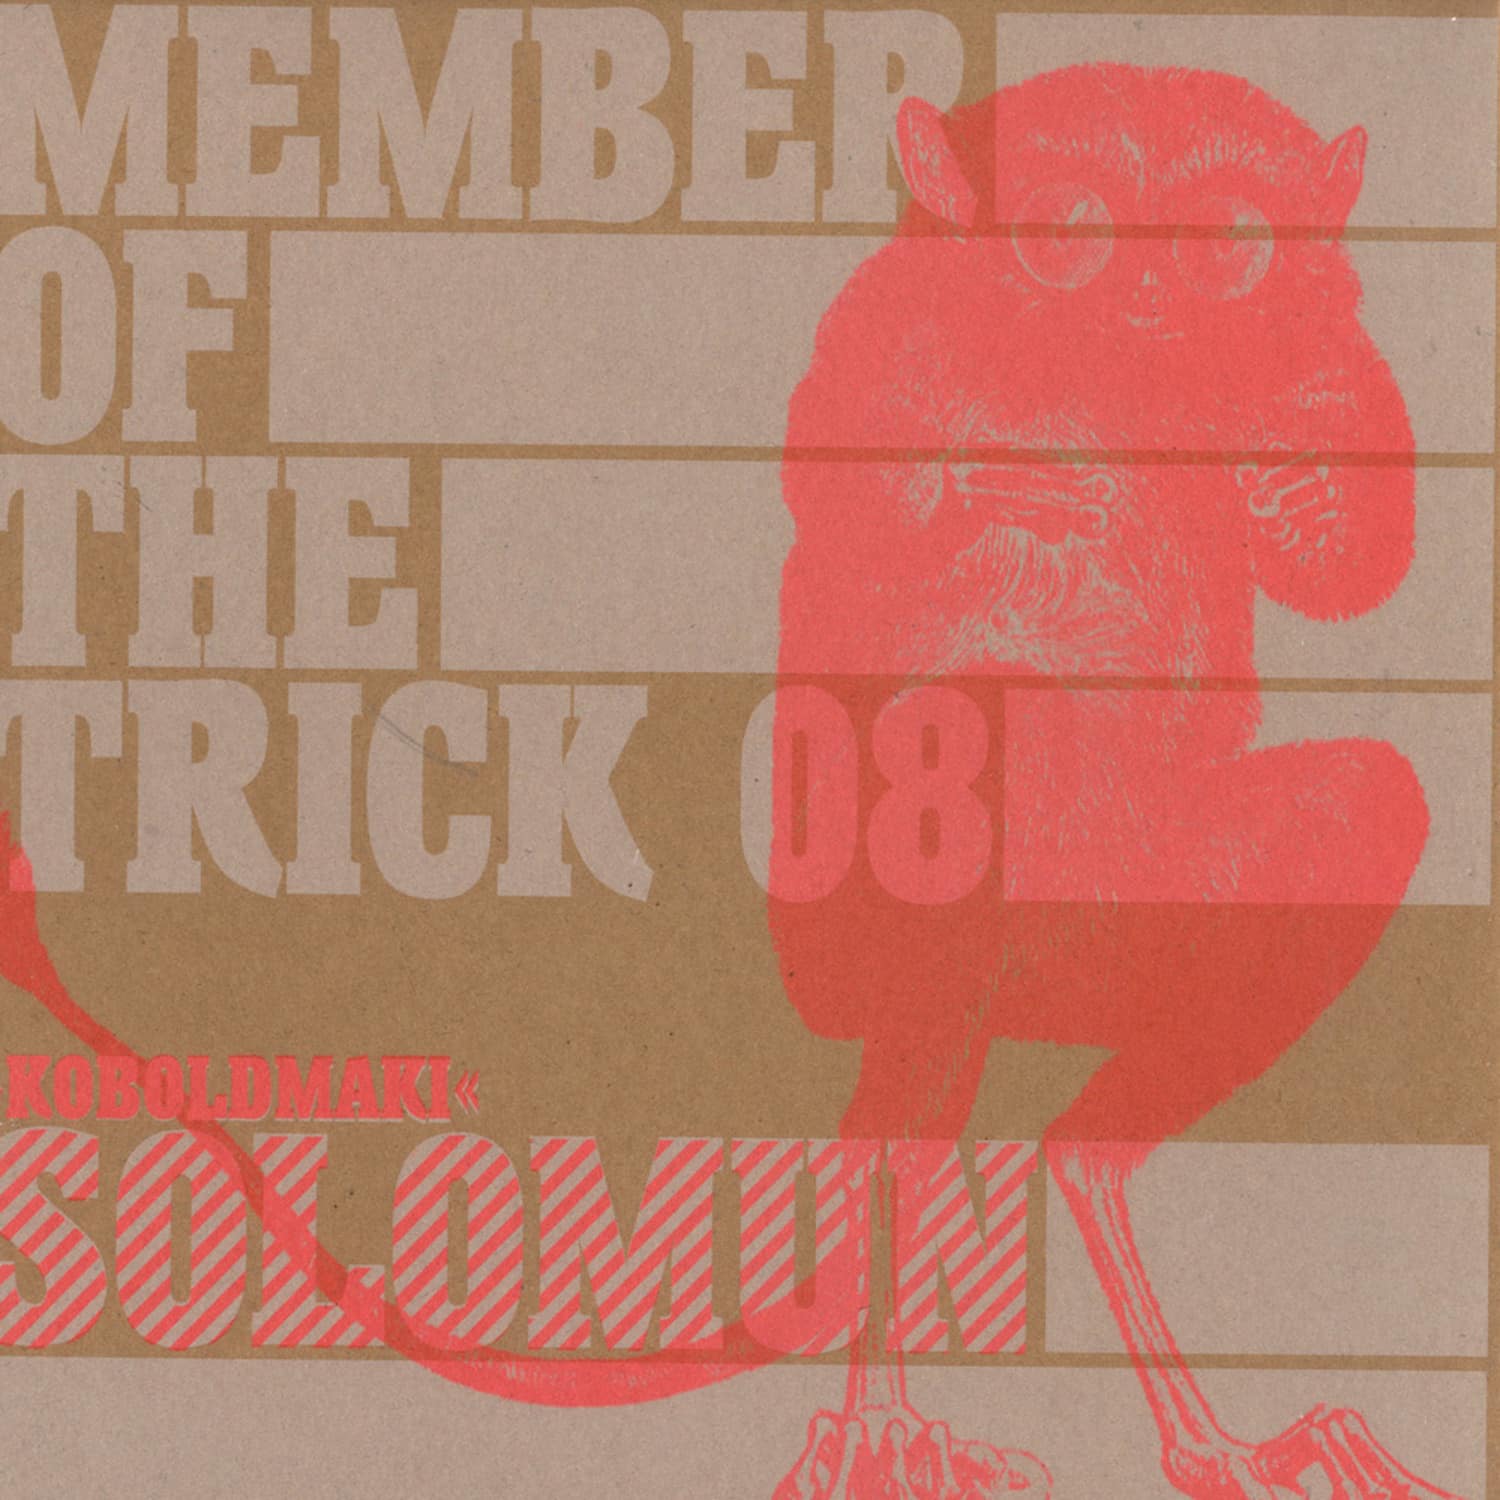 Solomun - Member of the Trick 08 : Koboldmaki